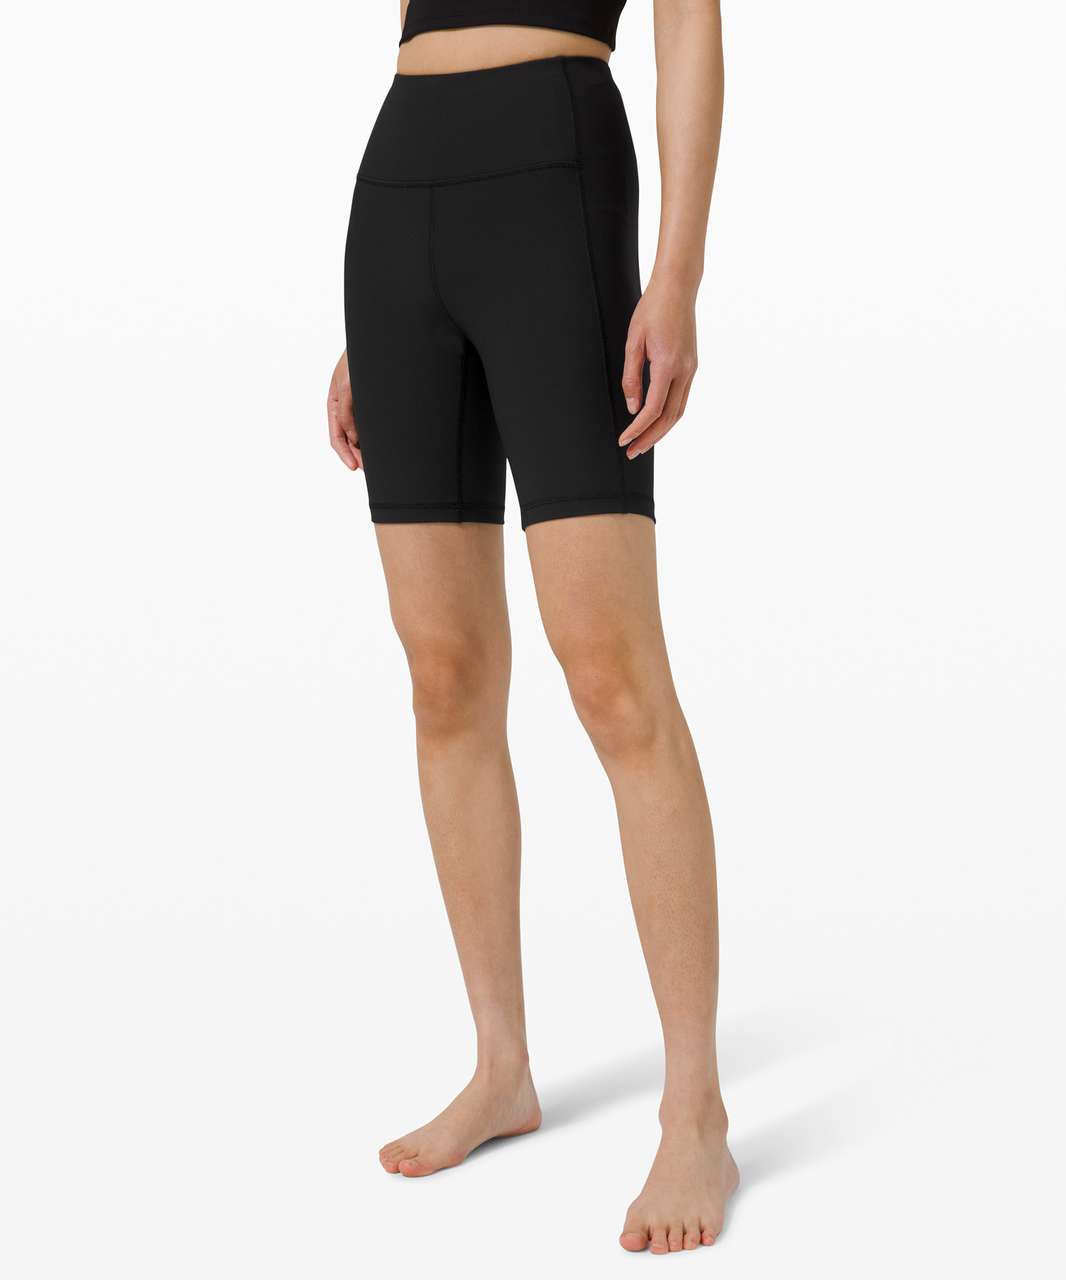 Lululemon Athletica Solid Black Athletic Shorts Size 8 - 51% off